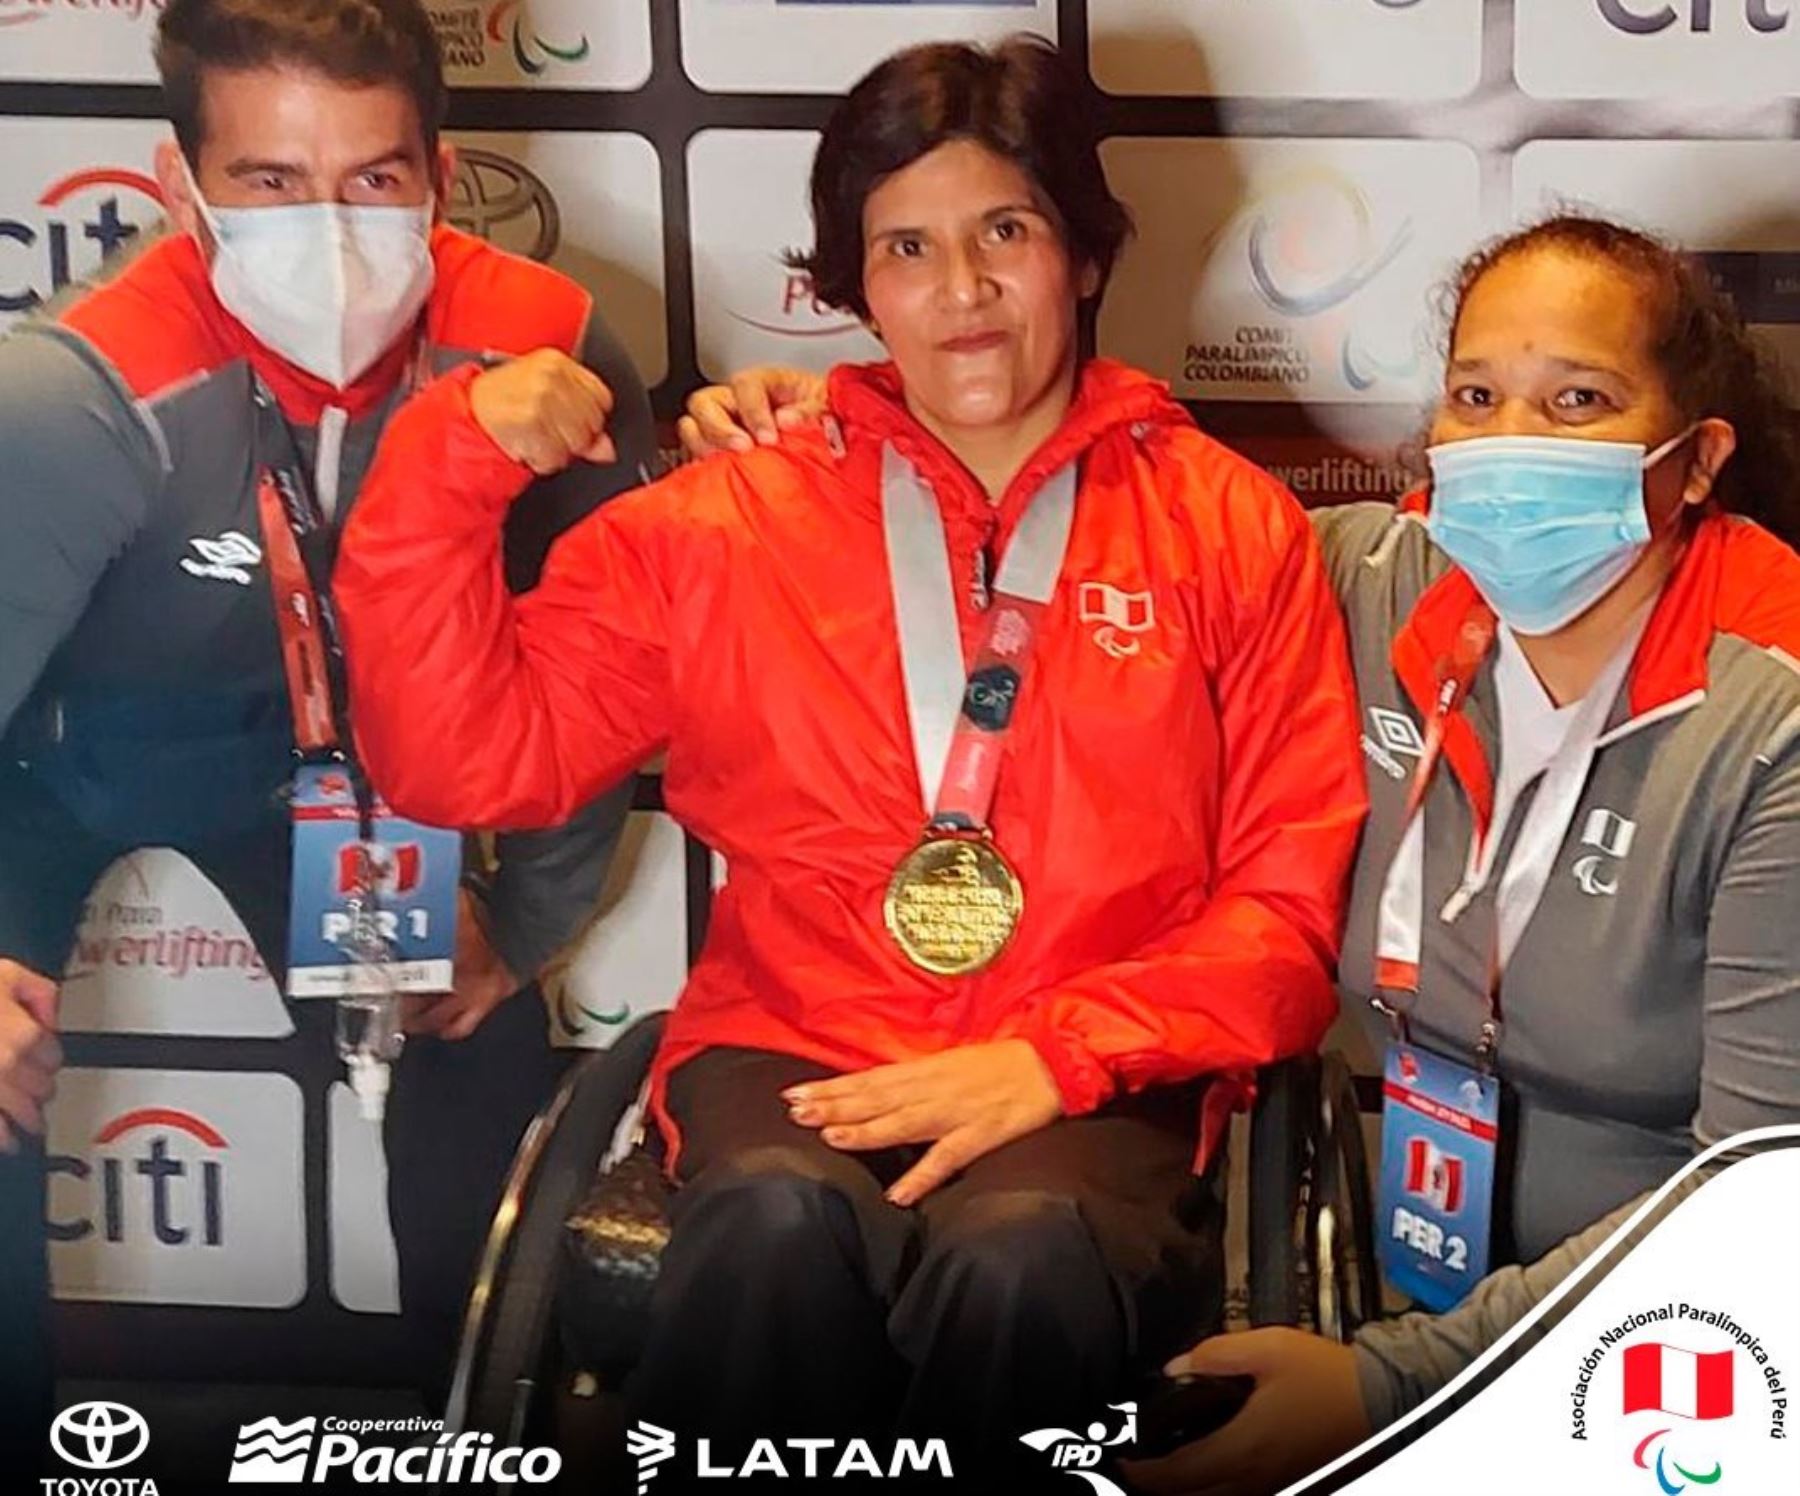 Noemí Vásquez luce orgullosa su medalla obtenida en Colombia.